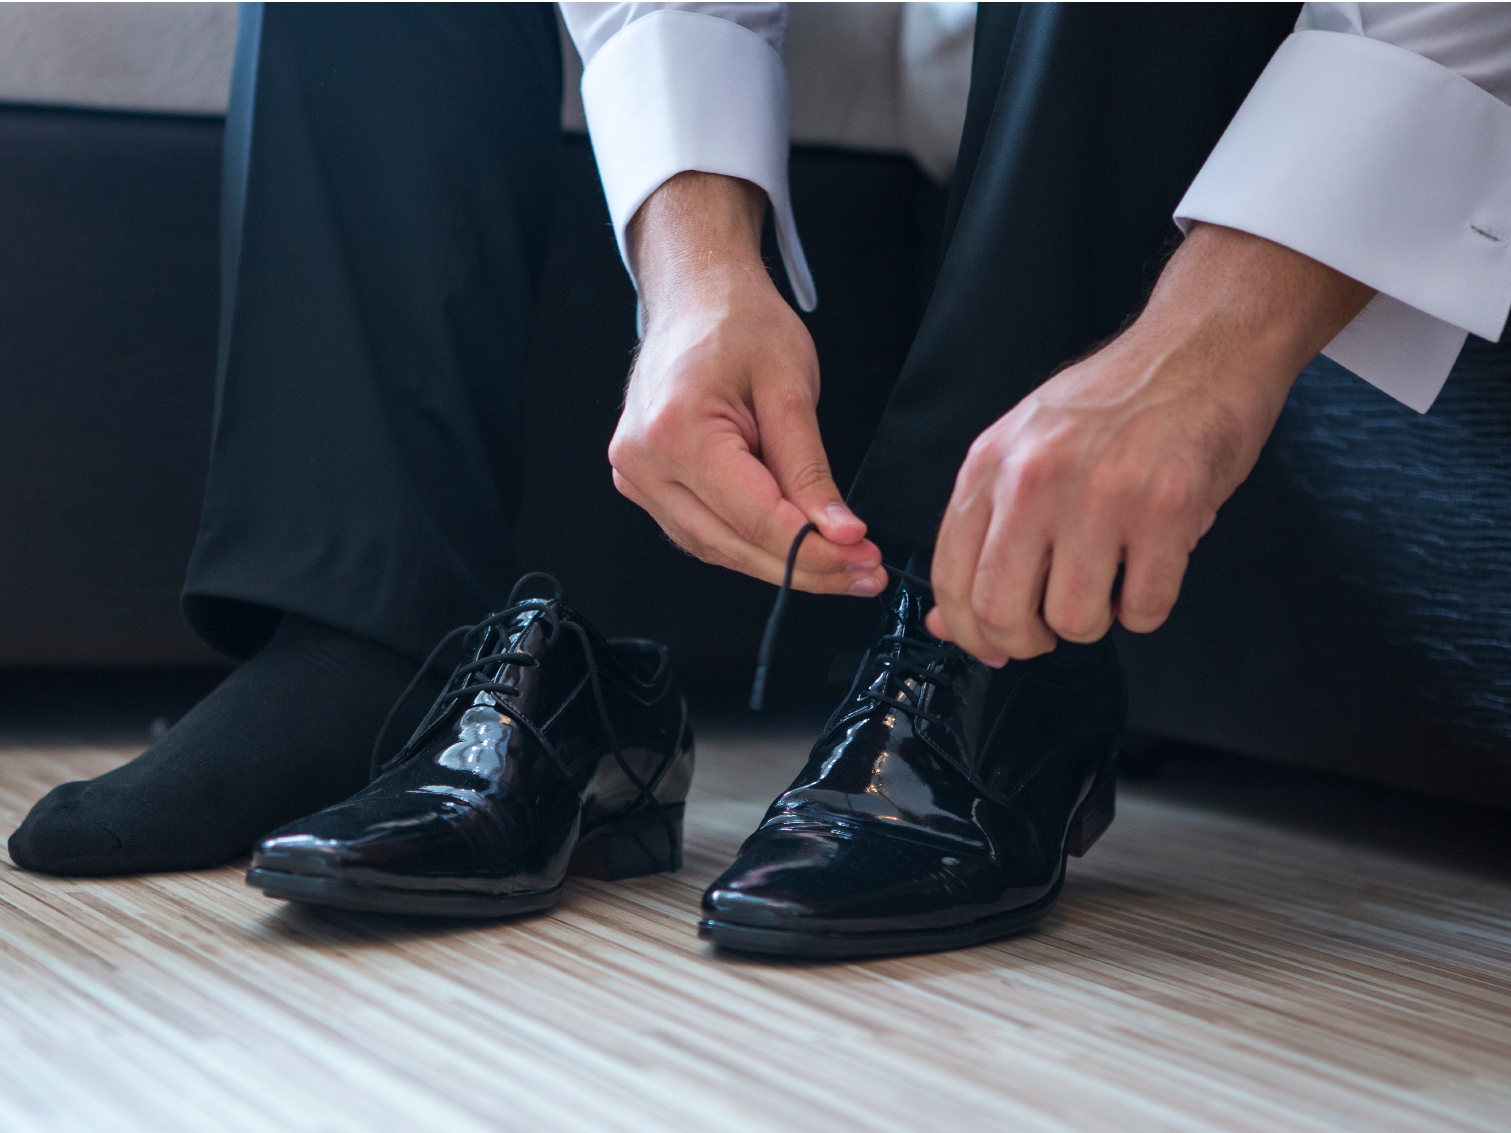 Как правильно подобрать обувь мужчине, профессиональные советы экспертов.